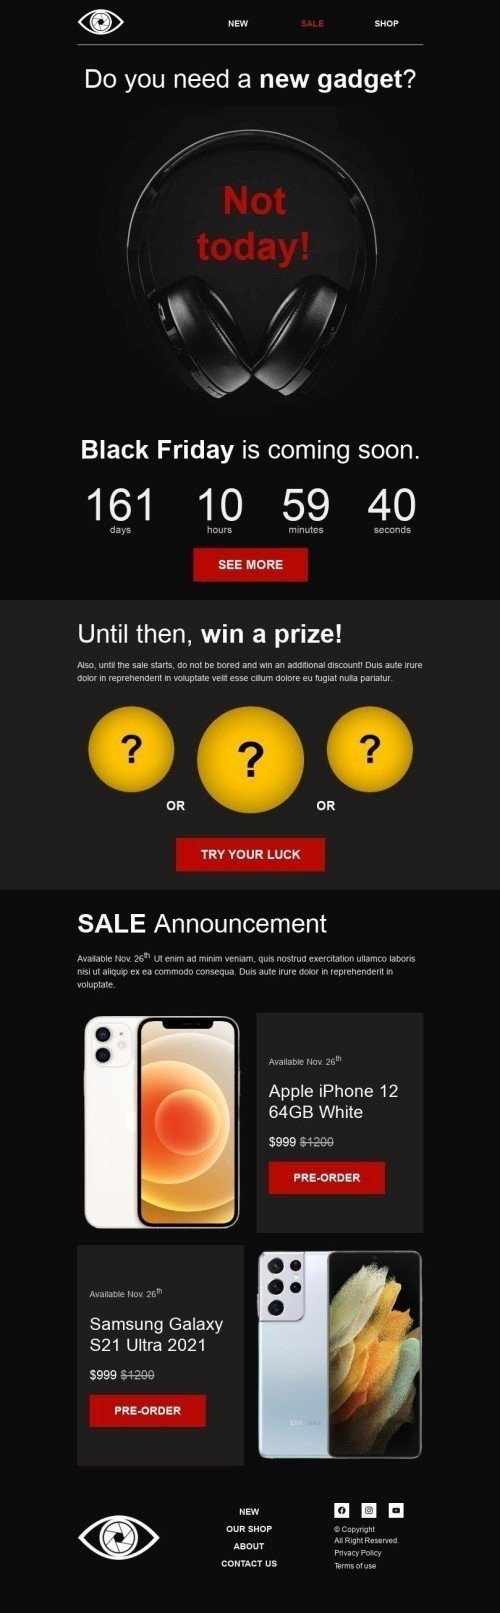 Шаблон письма к празднику Черная пятница «Выиграйте приз» для индустрии «Гаджеты» мобильный вид